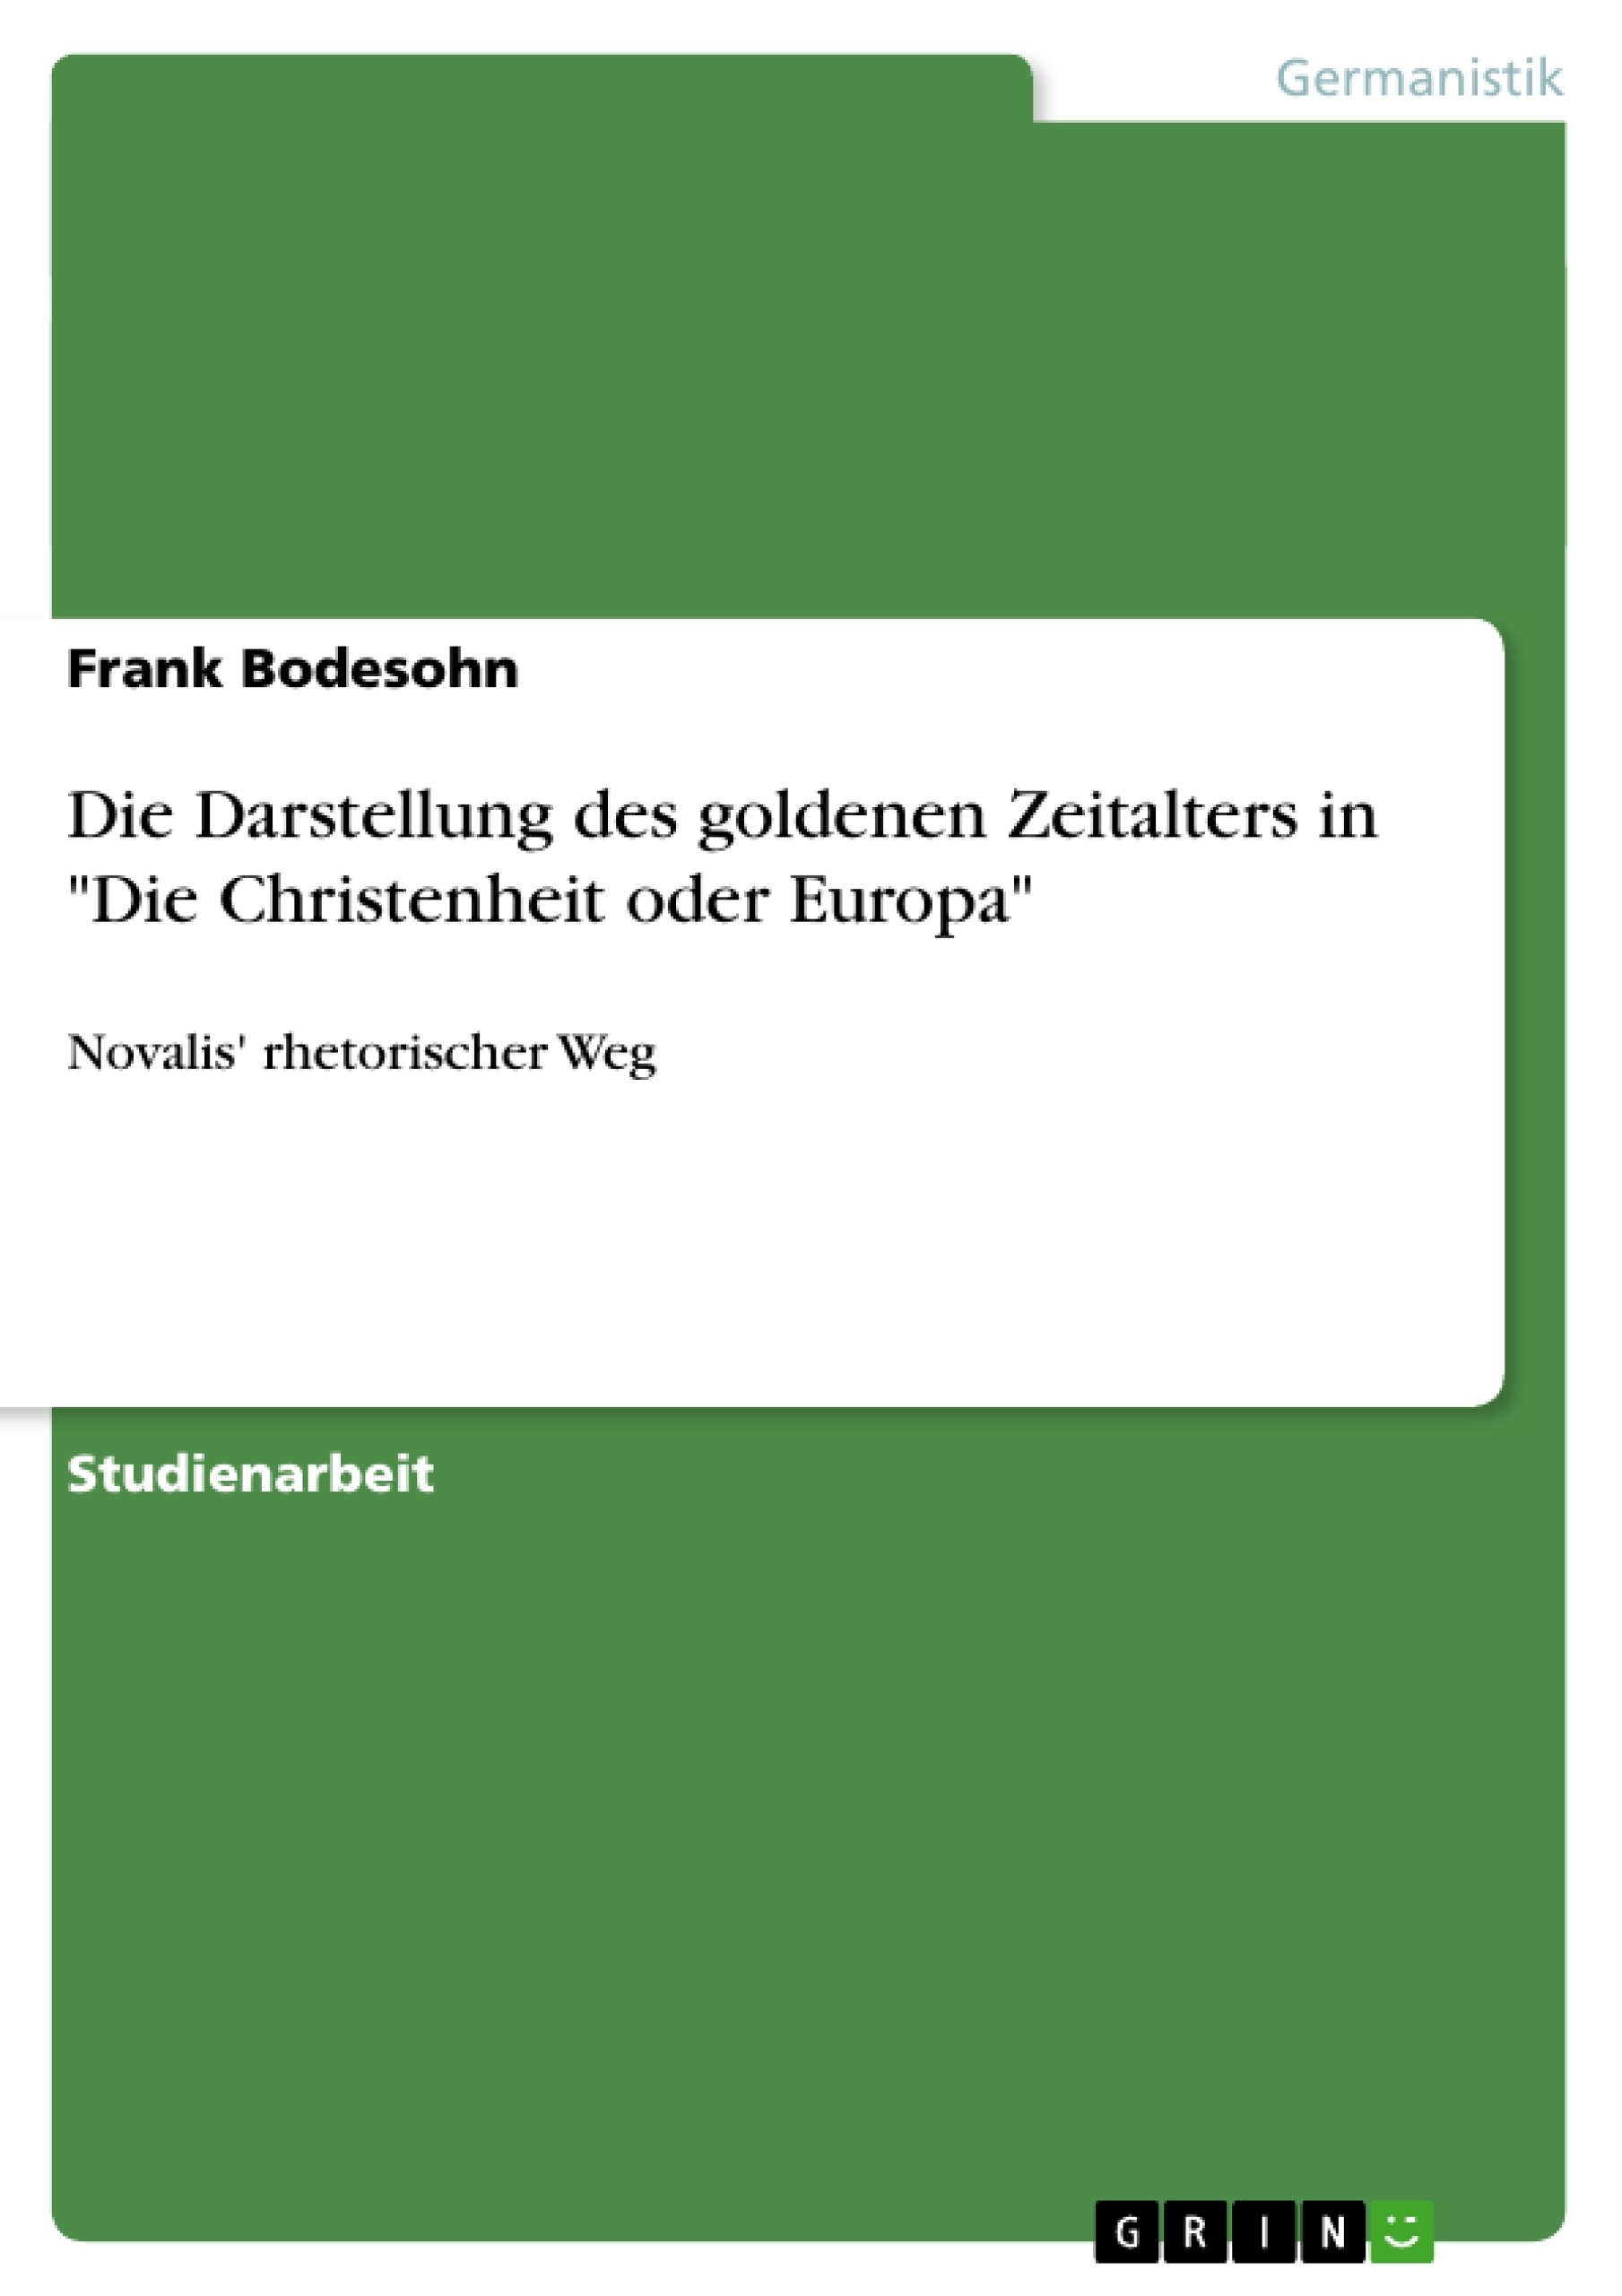 Title: Die Darstellung des goldenen Zeitalters in "Die Christenheit oder Europa"